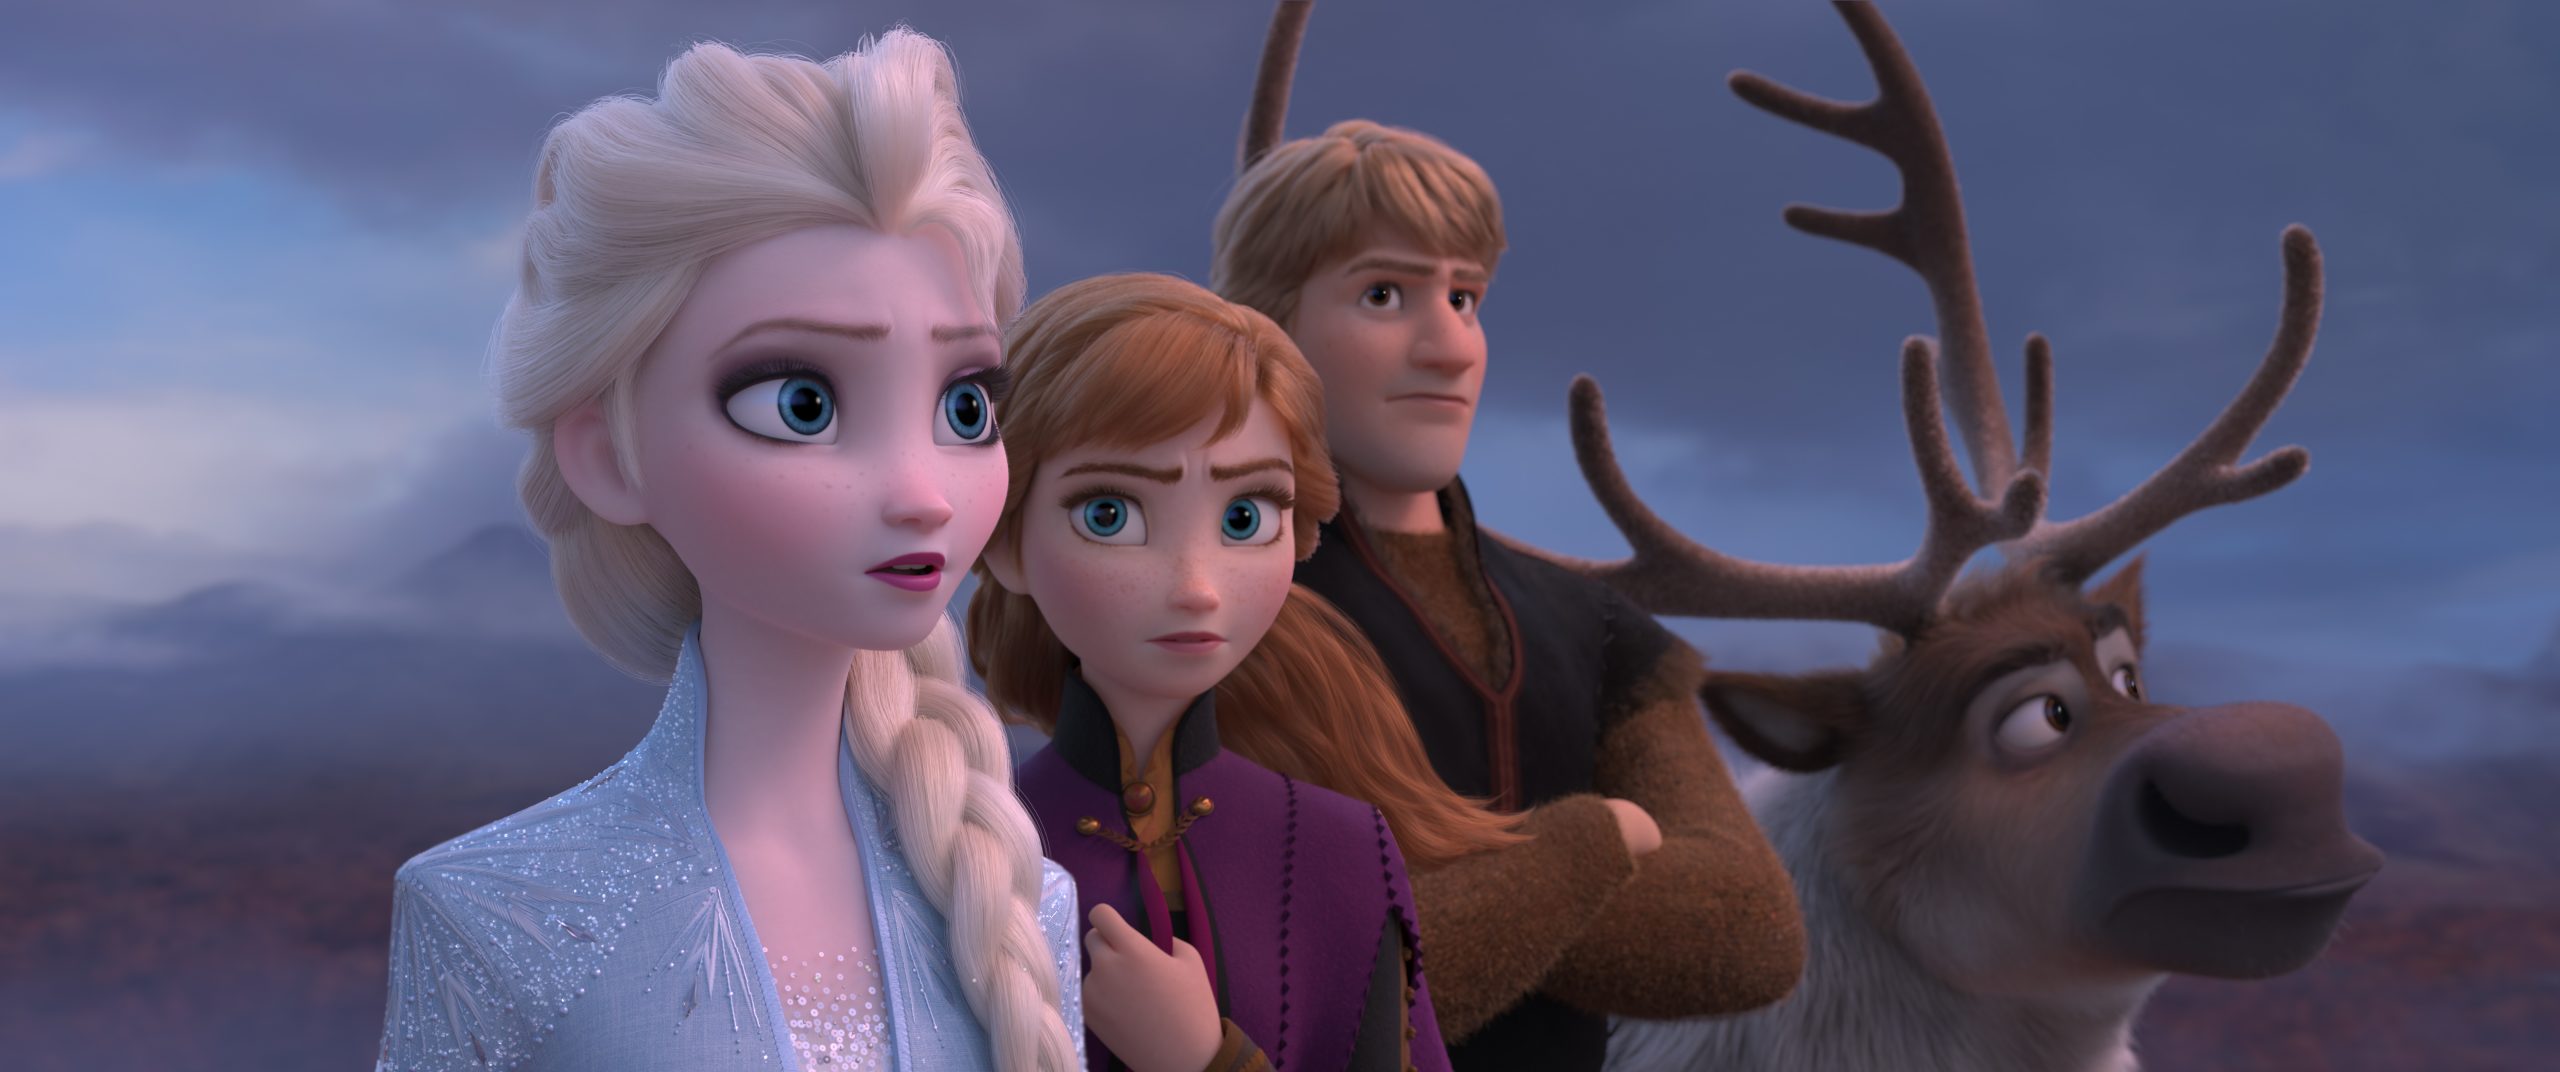 Foto de “Frozen 2” Todo lo que tienes que saber antes de ver la segunda parte del gran éxito de la animación de Disney